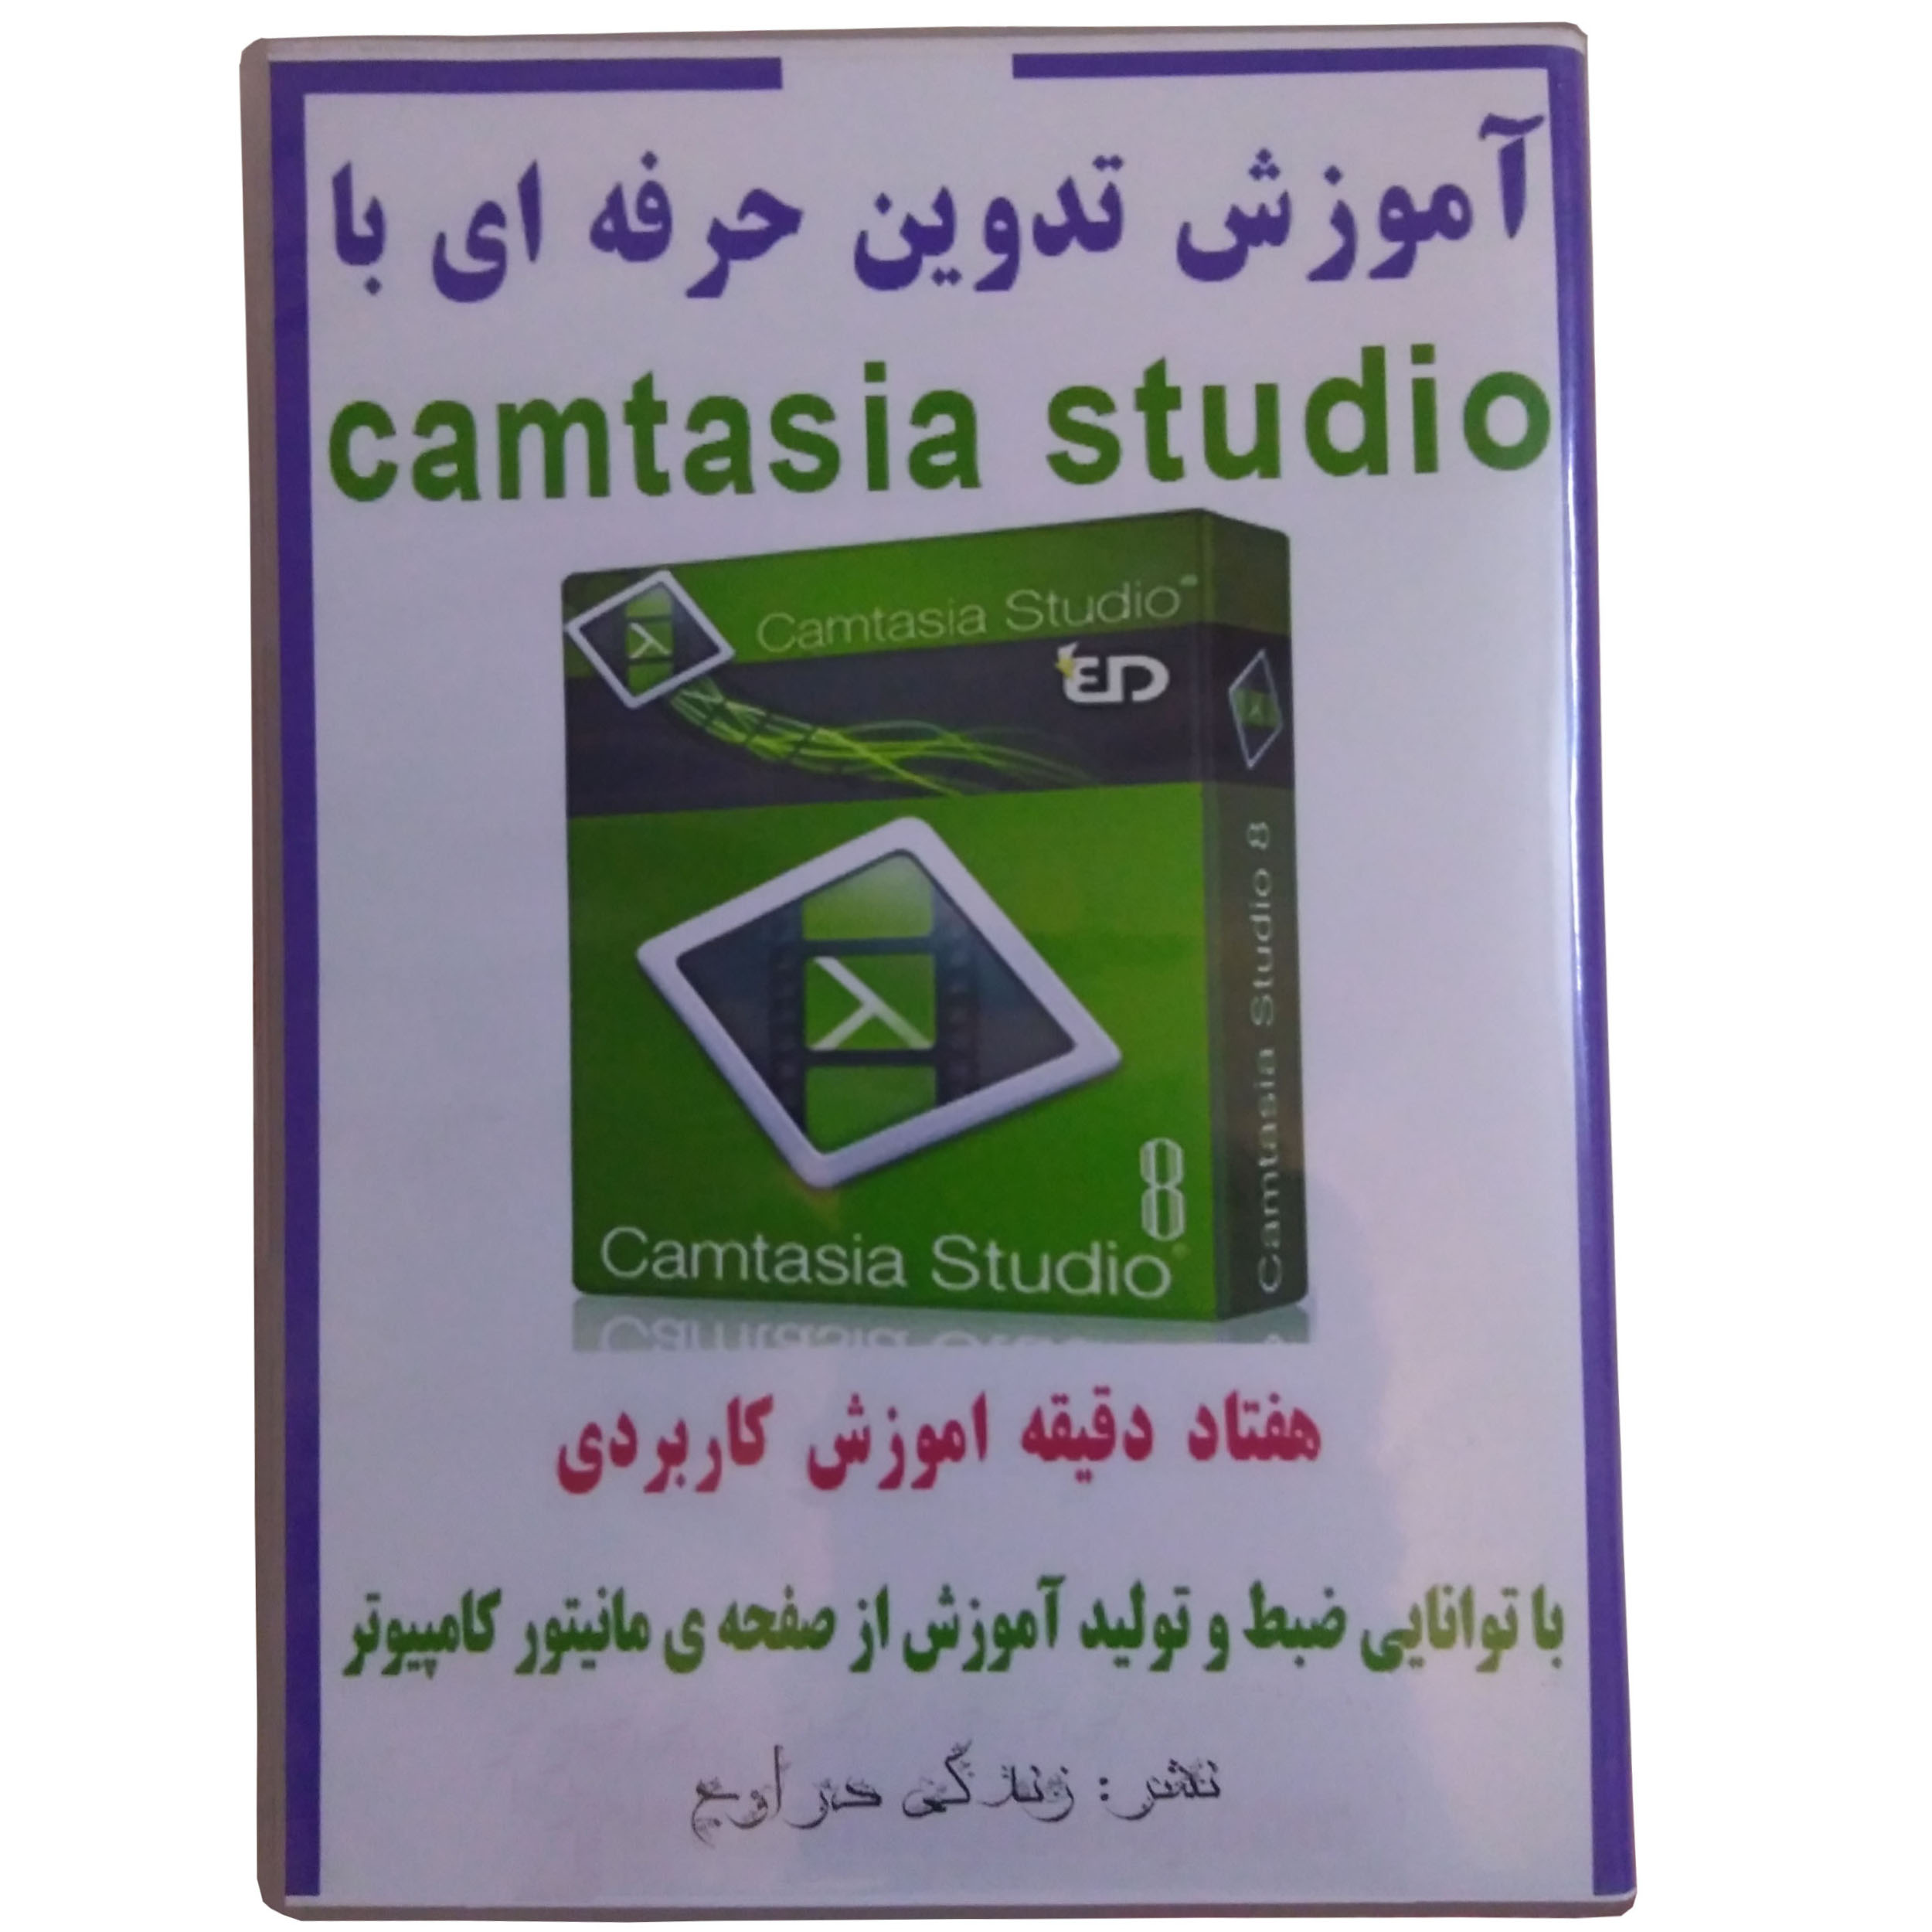  ویدیو آموزش تدوین حرفه ای با camtasia studio نشر زندگی در اوج